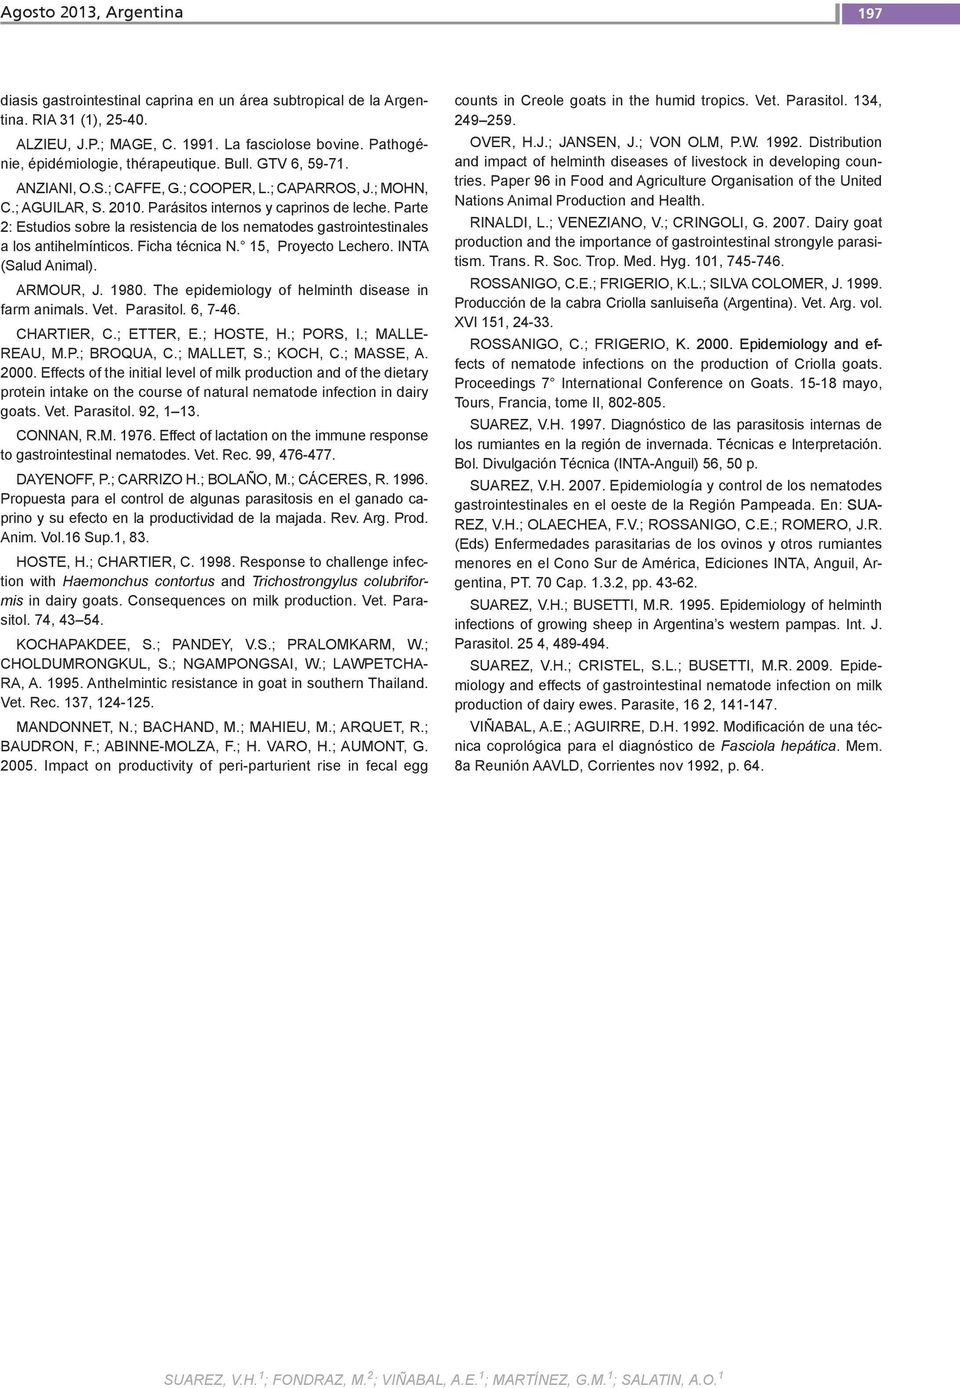 Parte 2: Estudios sobre la resistencia de los nematodes gastrointestinales a los antihelmínticos. Ficha técnica N. 15, Proyecto Lechero. INTA (Salud Animal). ARMOUR, J. 1980.